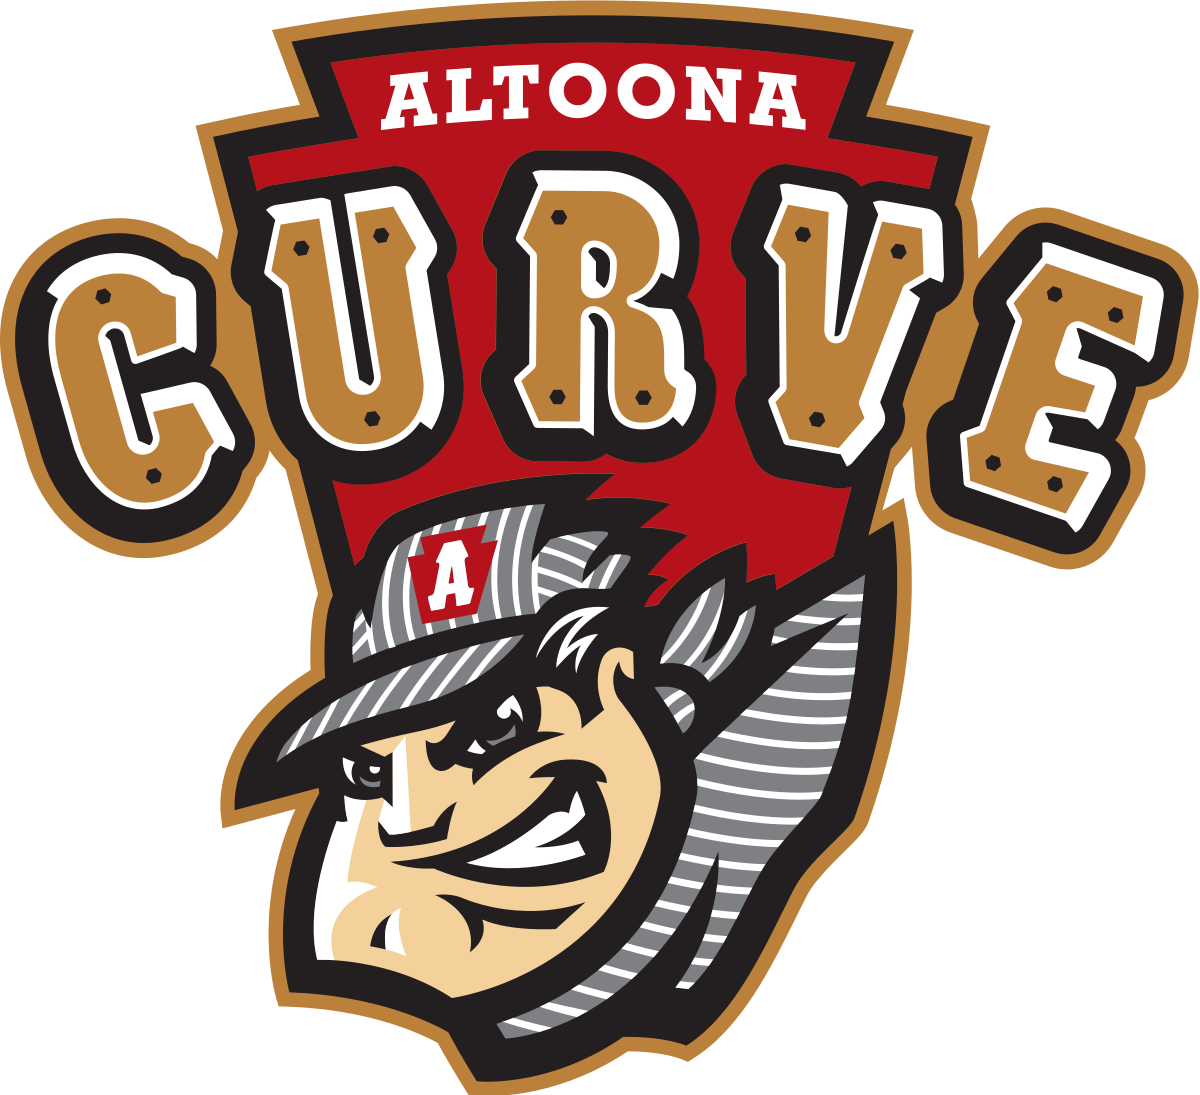 Altoona_Curve_logo.svg